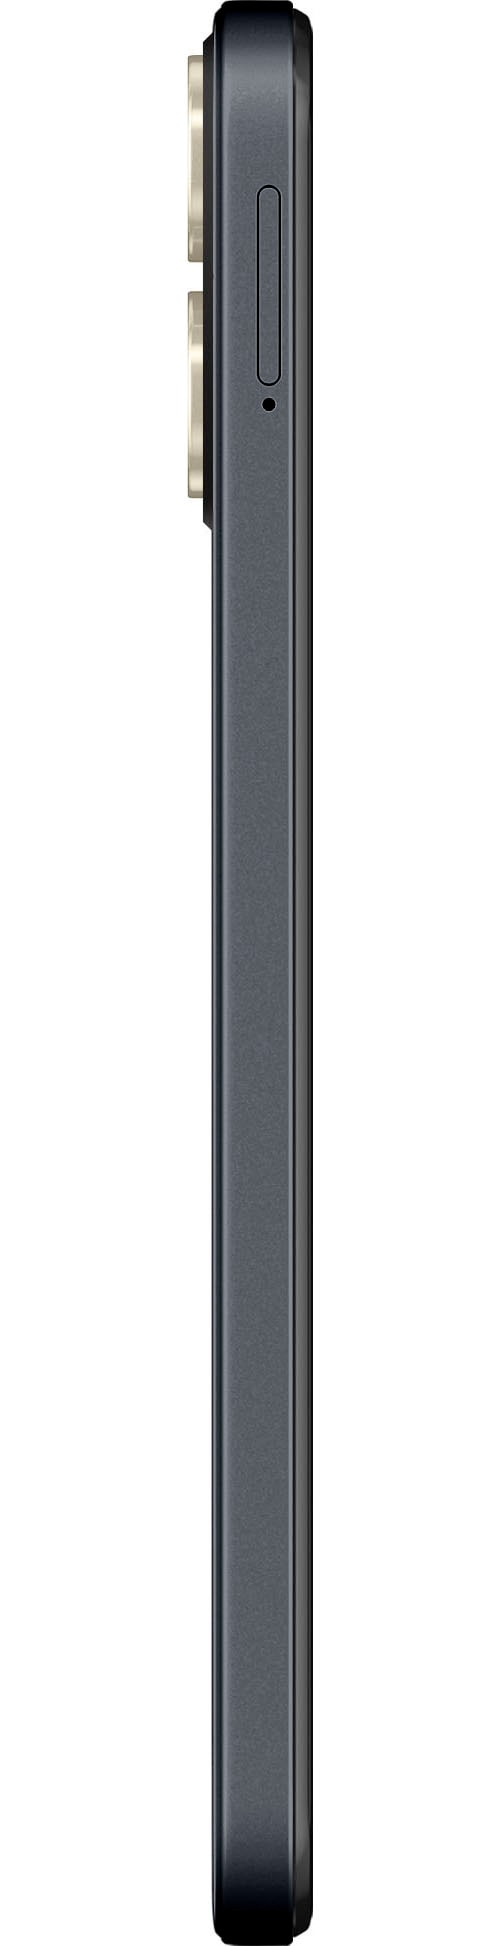 ZTE Smartphone »Blade A73«, schwarz, 16,76 cm/6,6 Zoll, 128 GB Speicherplatz, 50 MP Kamera